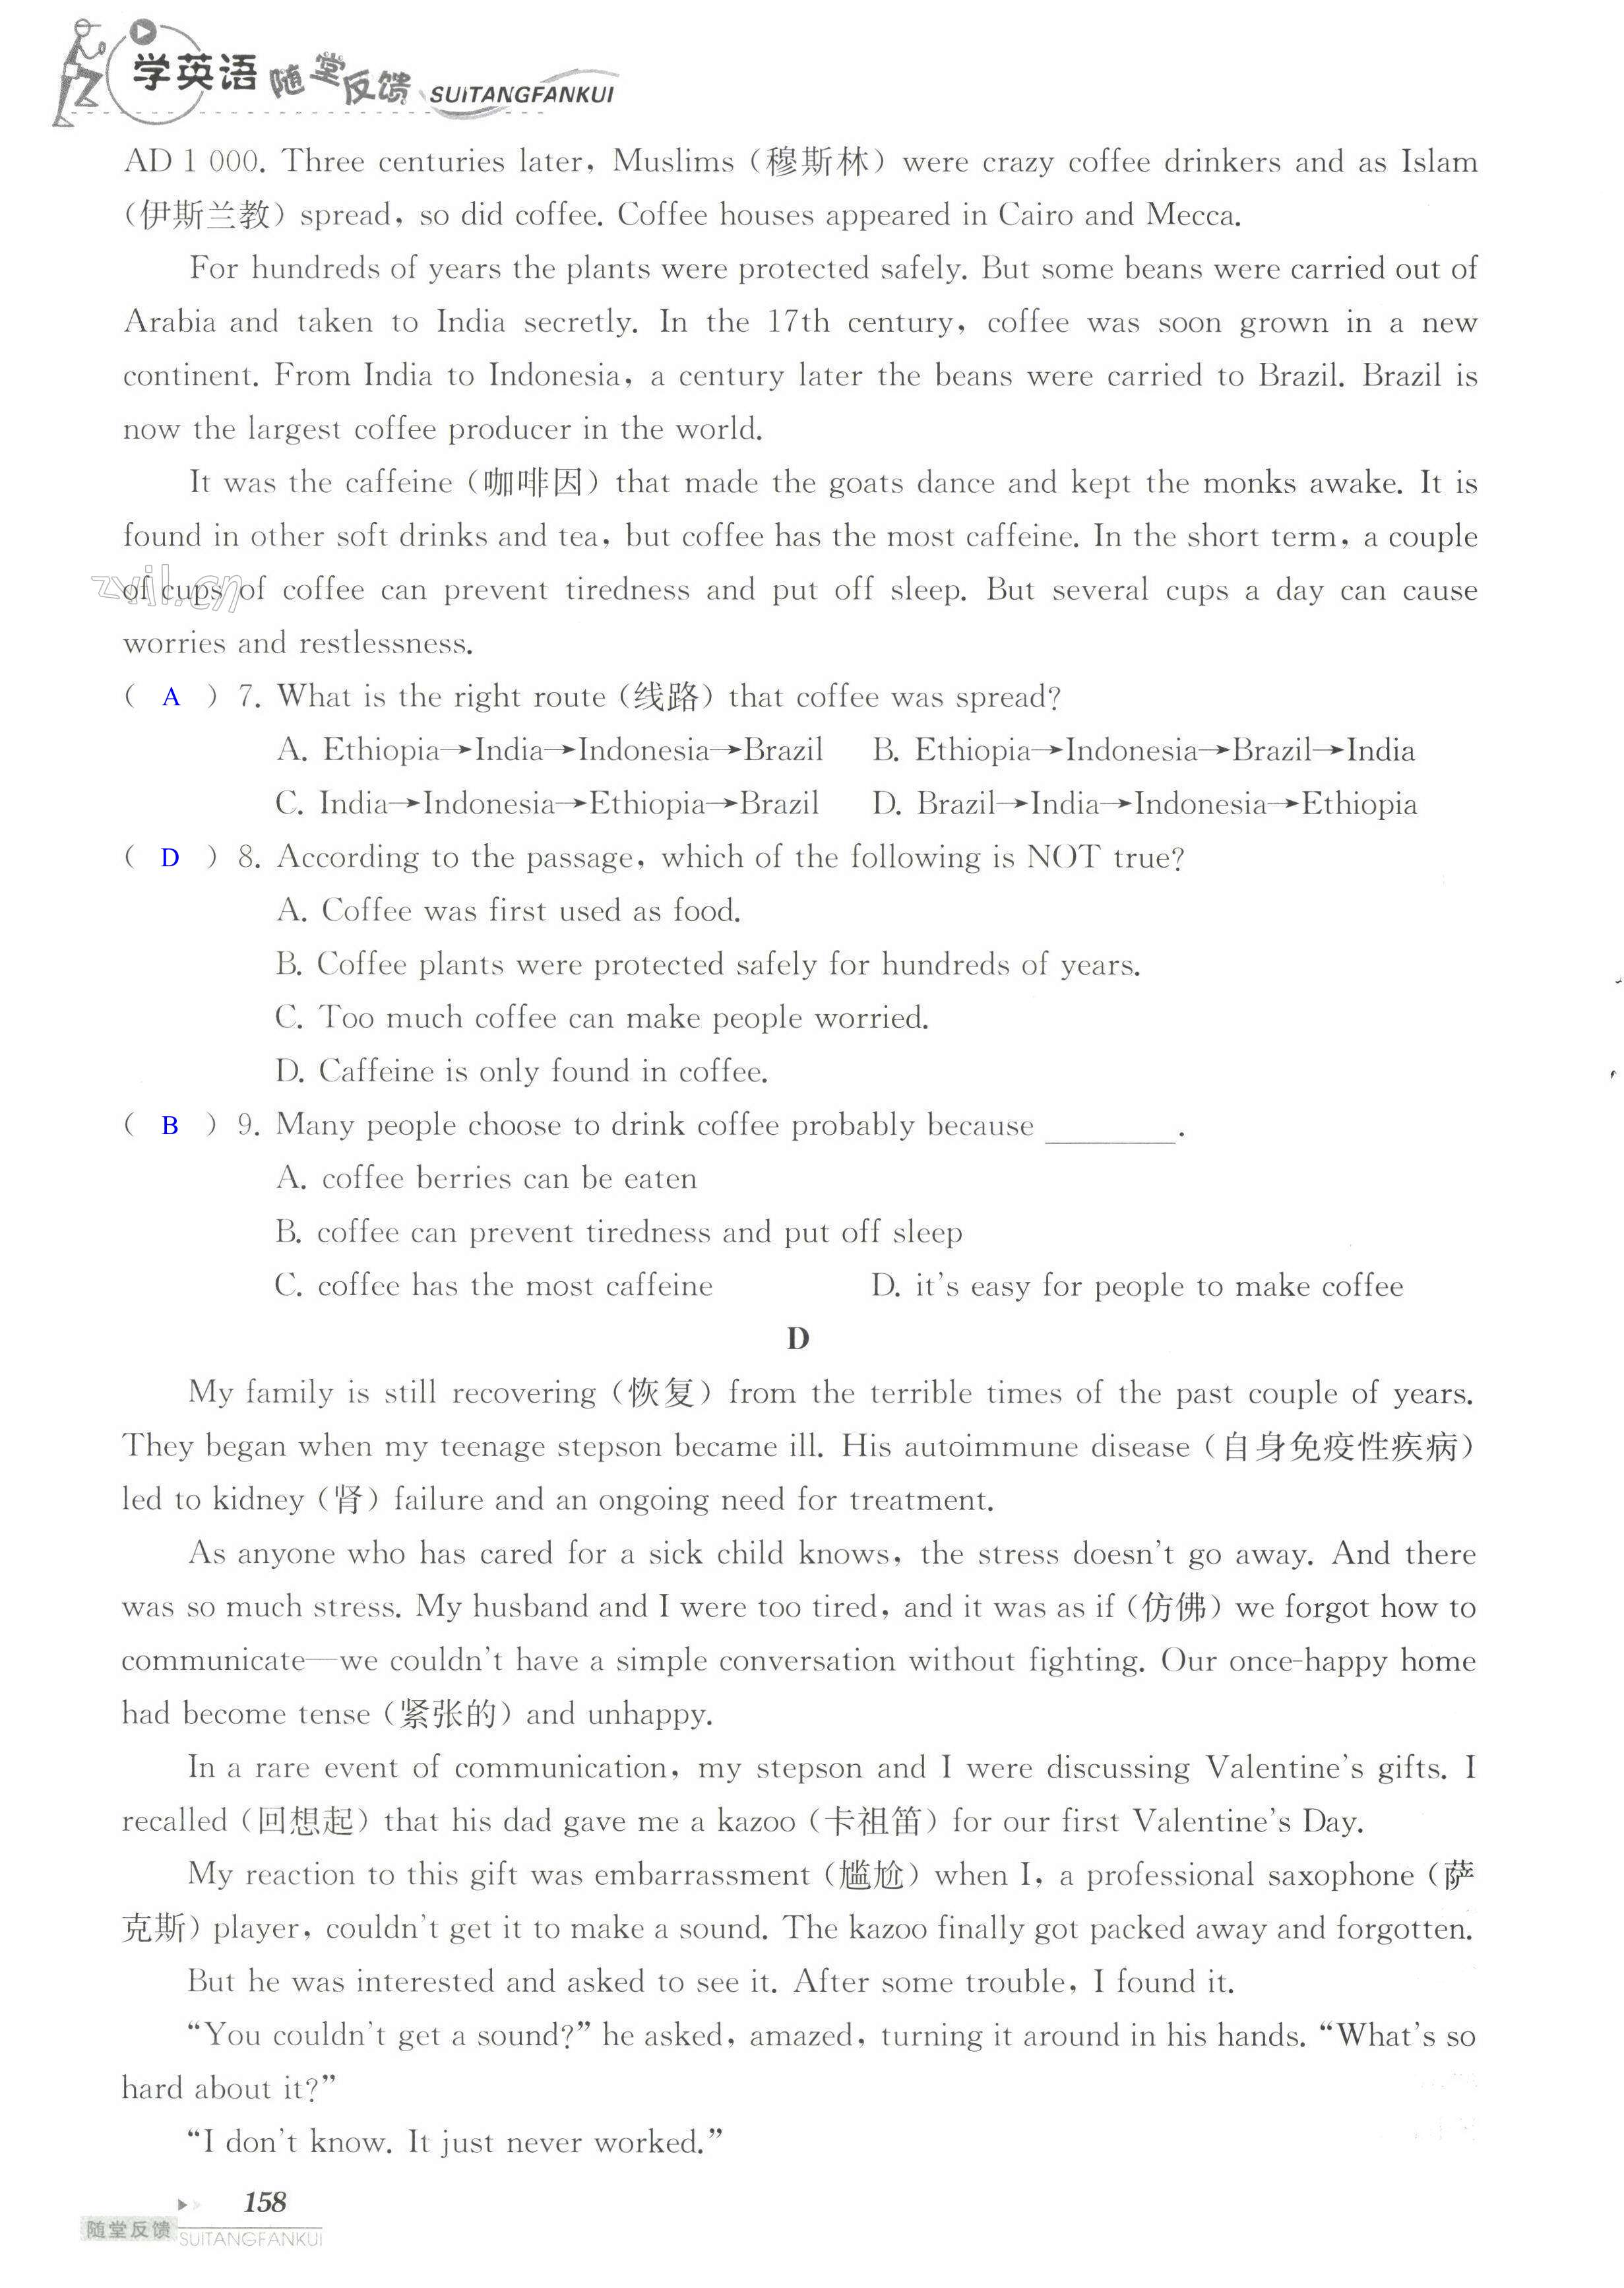 单元综合测试卷 Test for Unit 2 of 9A - 第158页